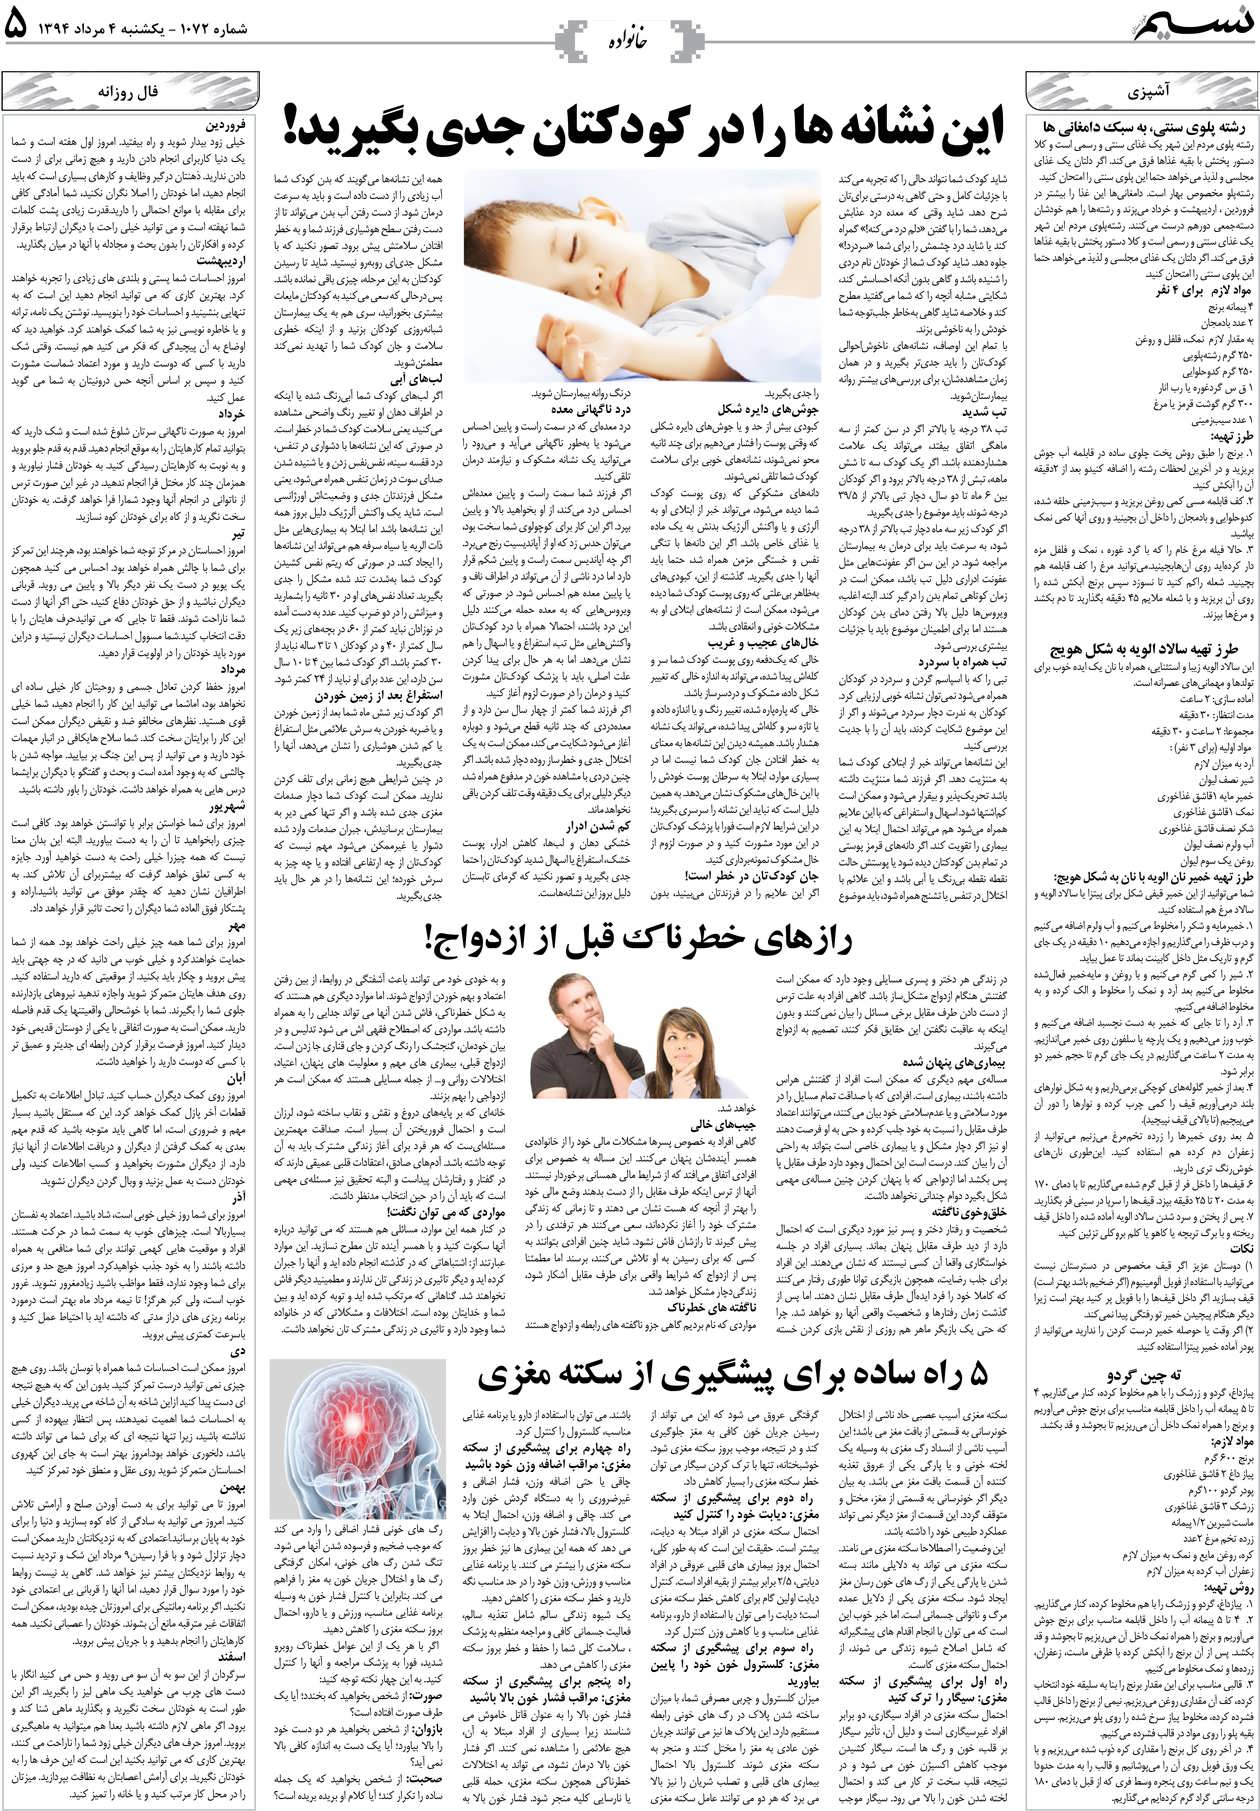 صفحه خانواده روزنامه نسیم شماره 1072